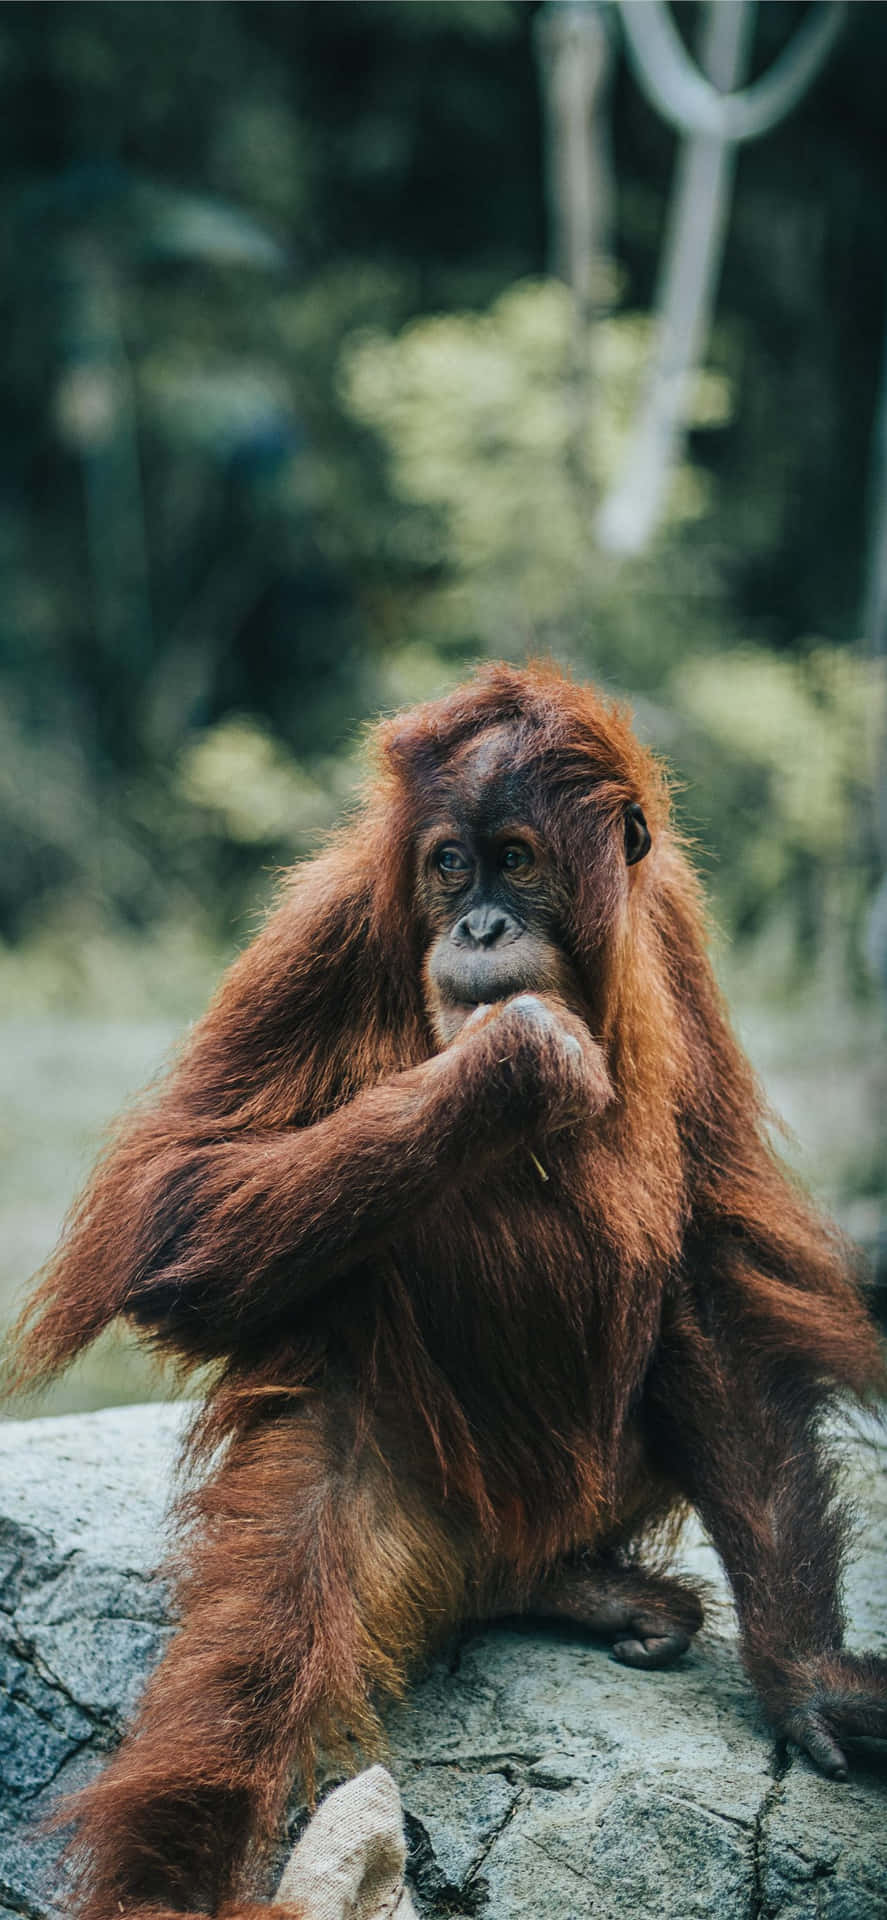 Long Reddish Hair Orangutan Wallpaper